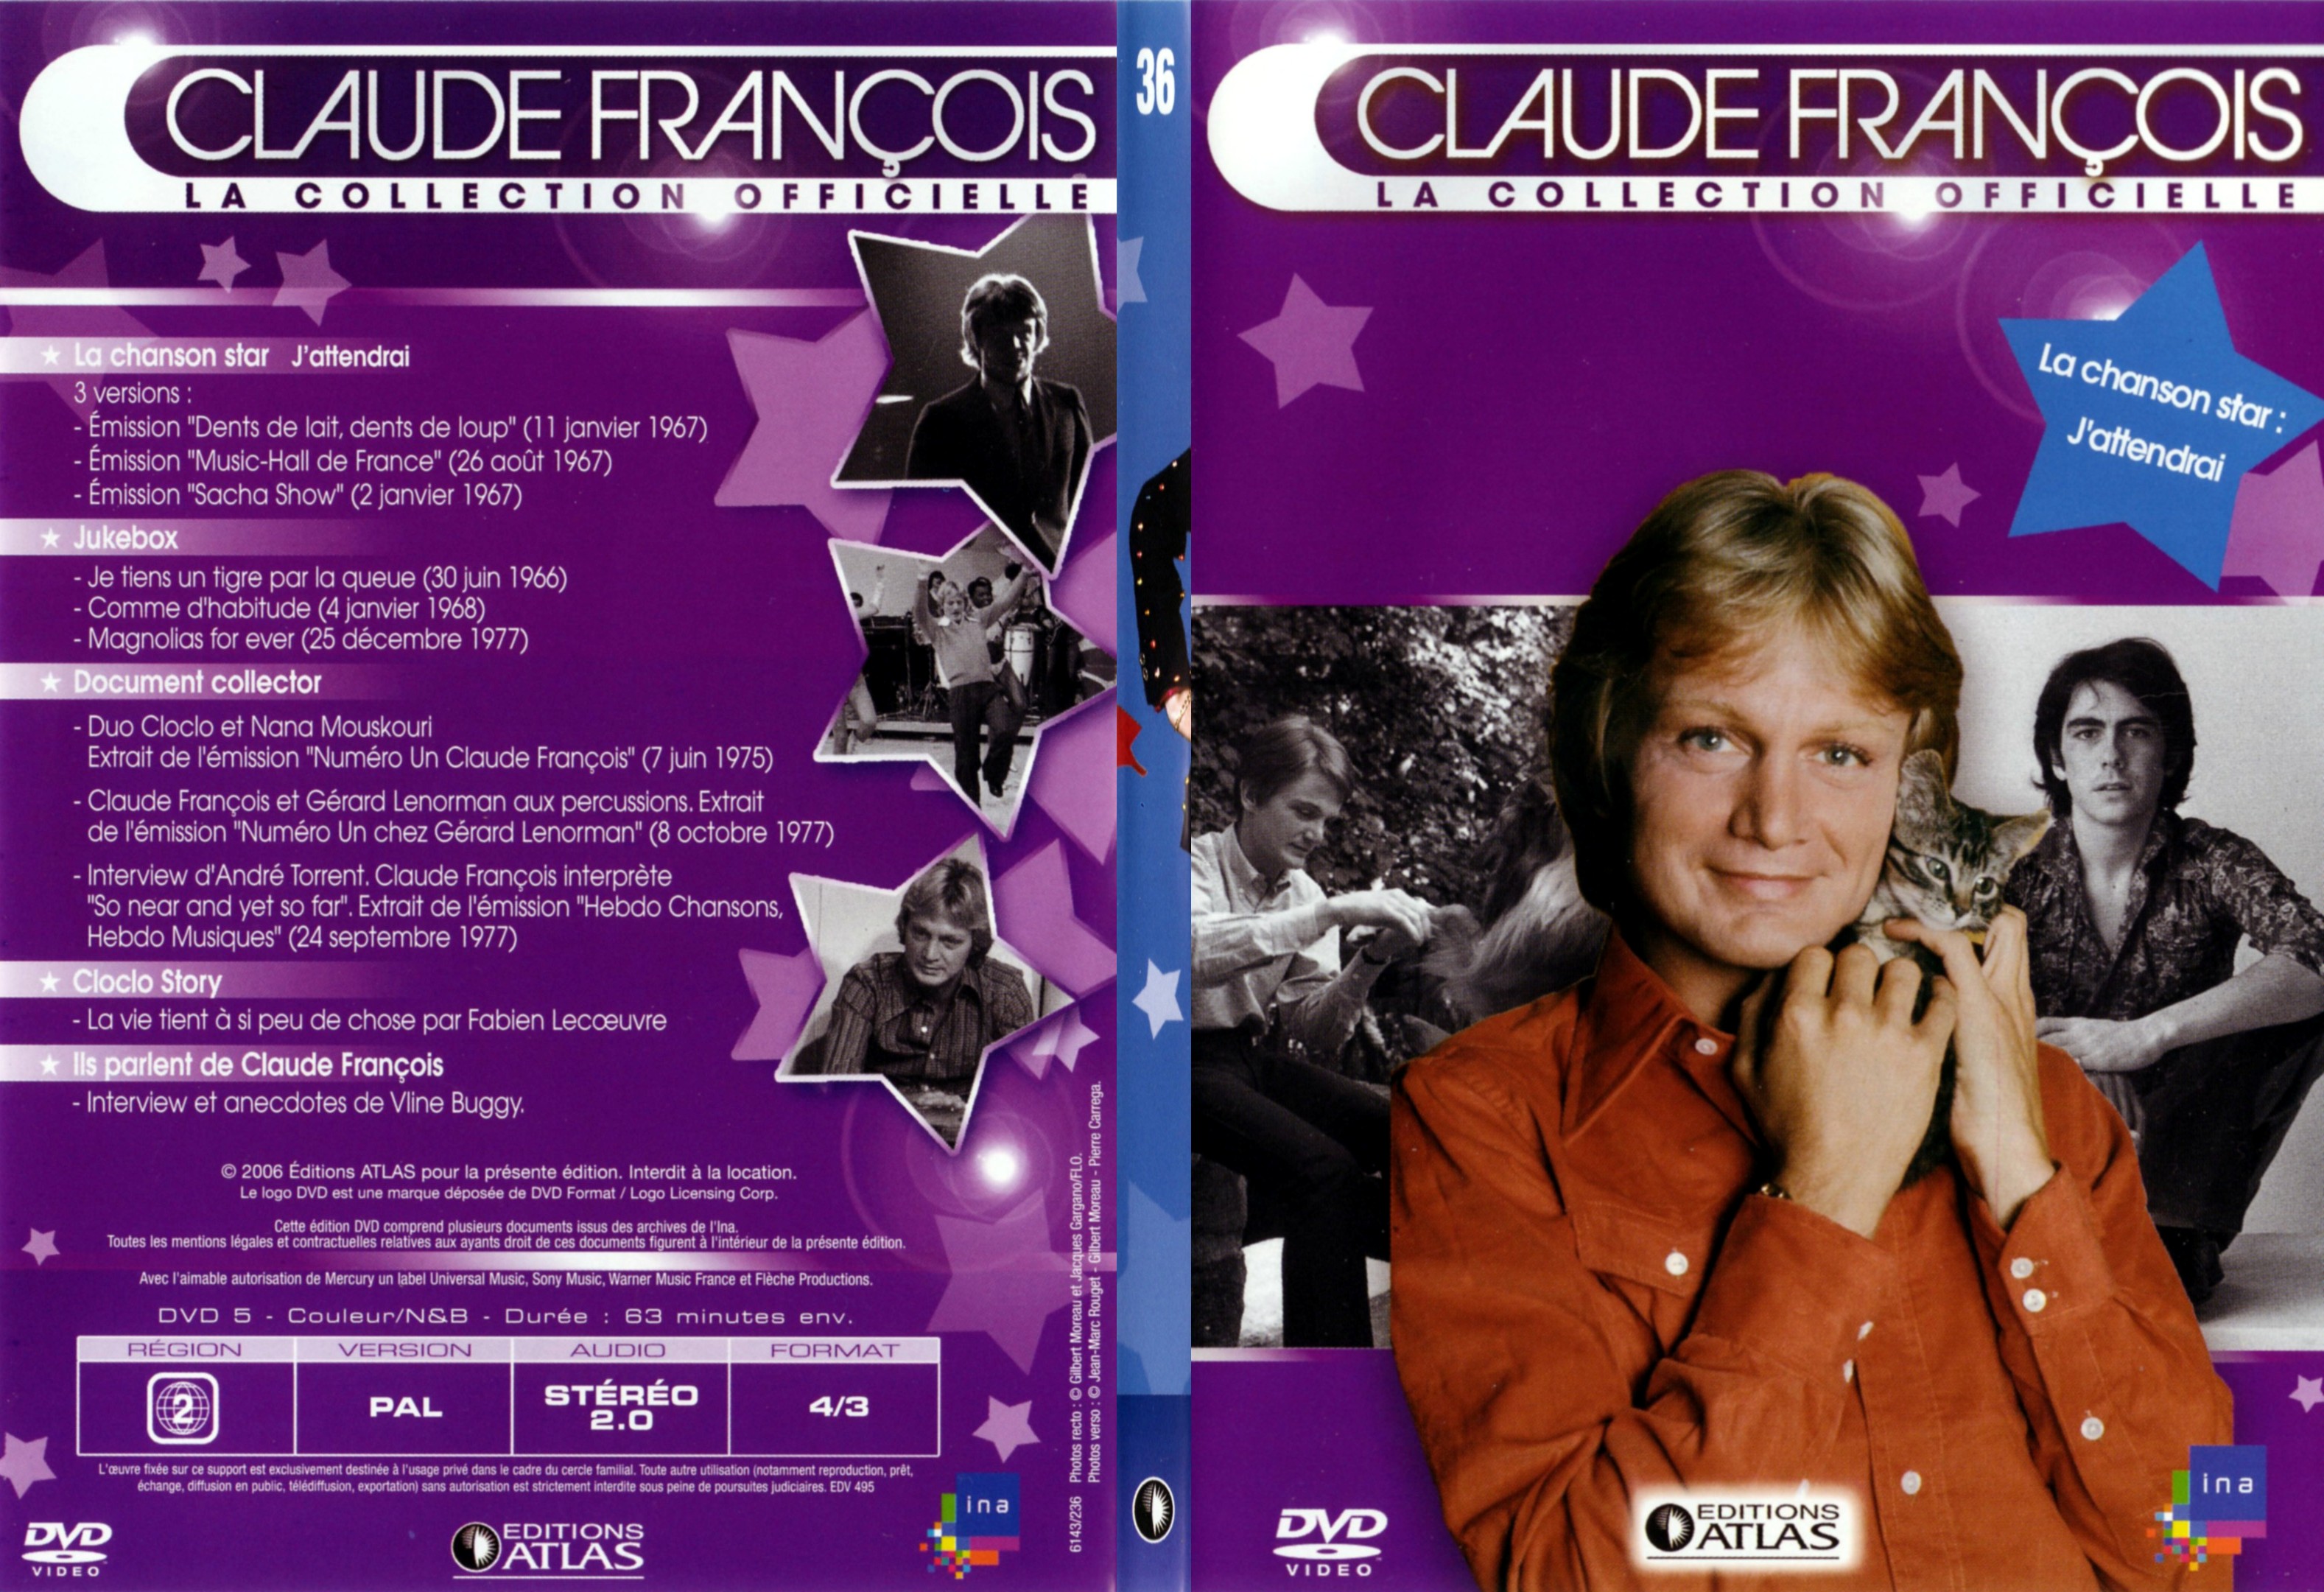 Jaquette DVD Claude francois le collection officielle vol 36 - SLIM